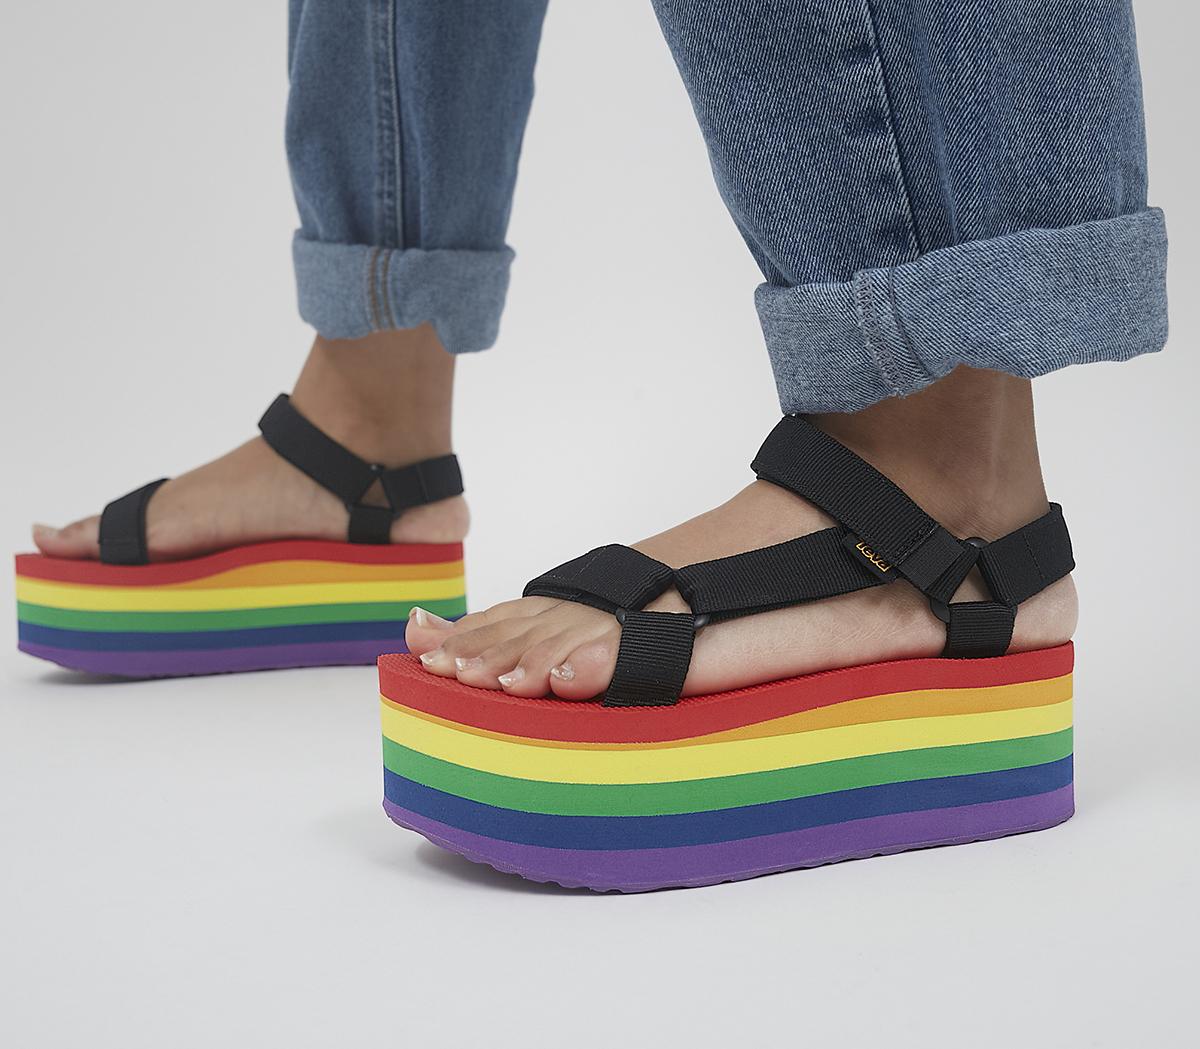 TevaFlatform Universal SandalsPride Rainbow